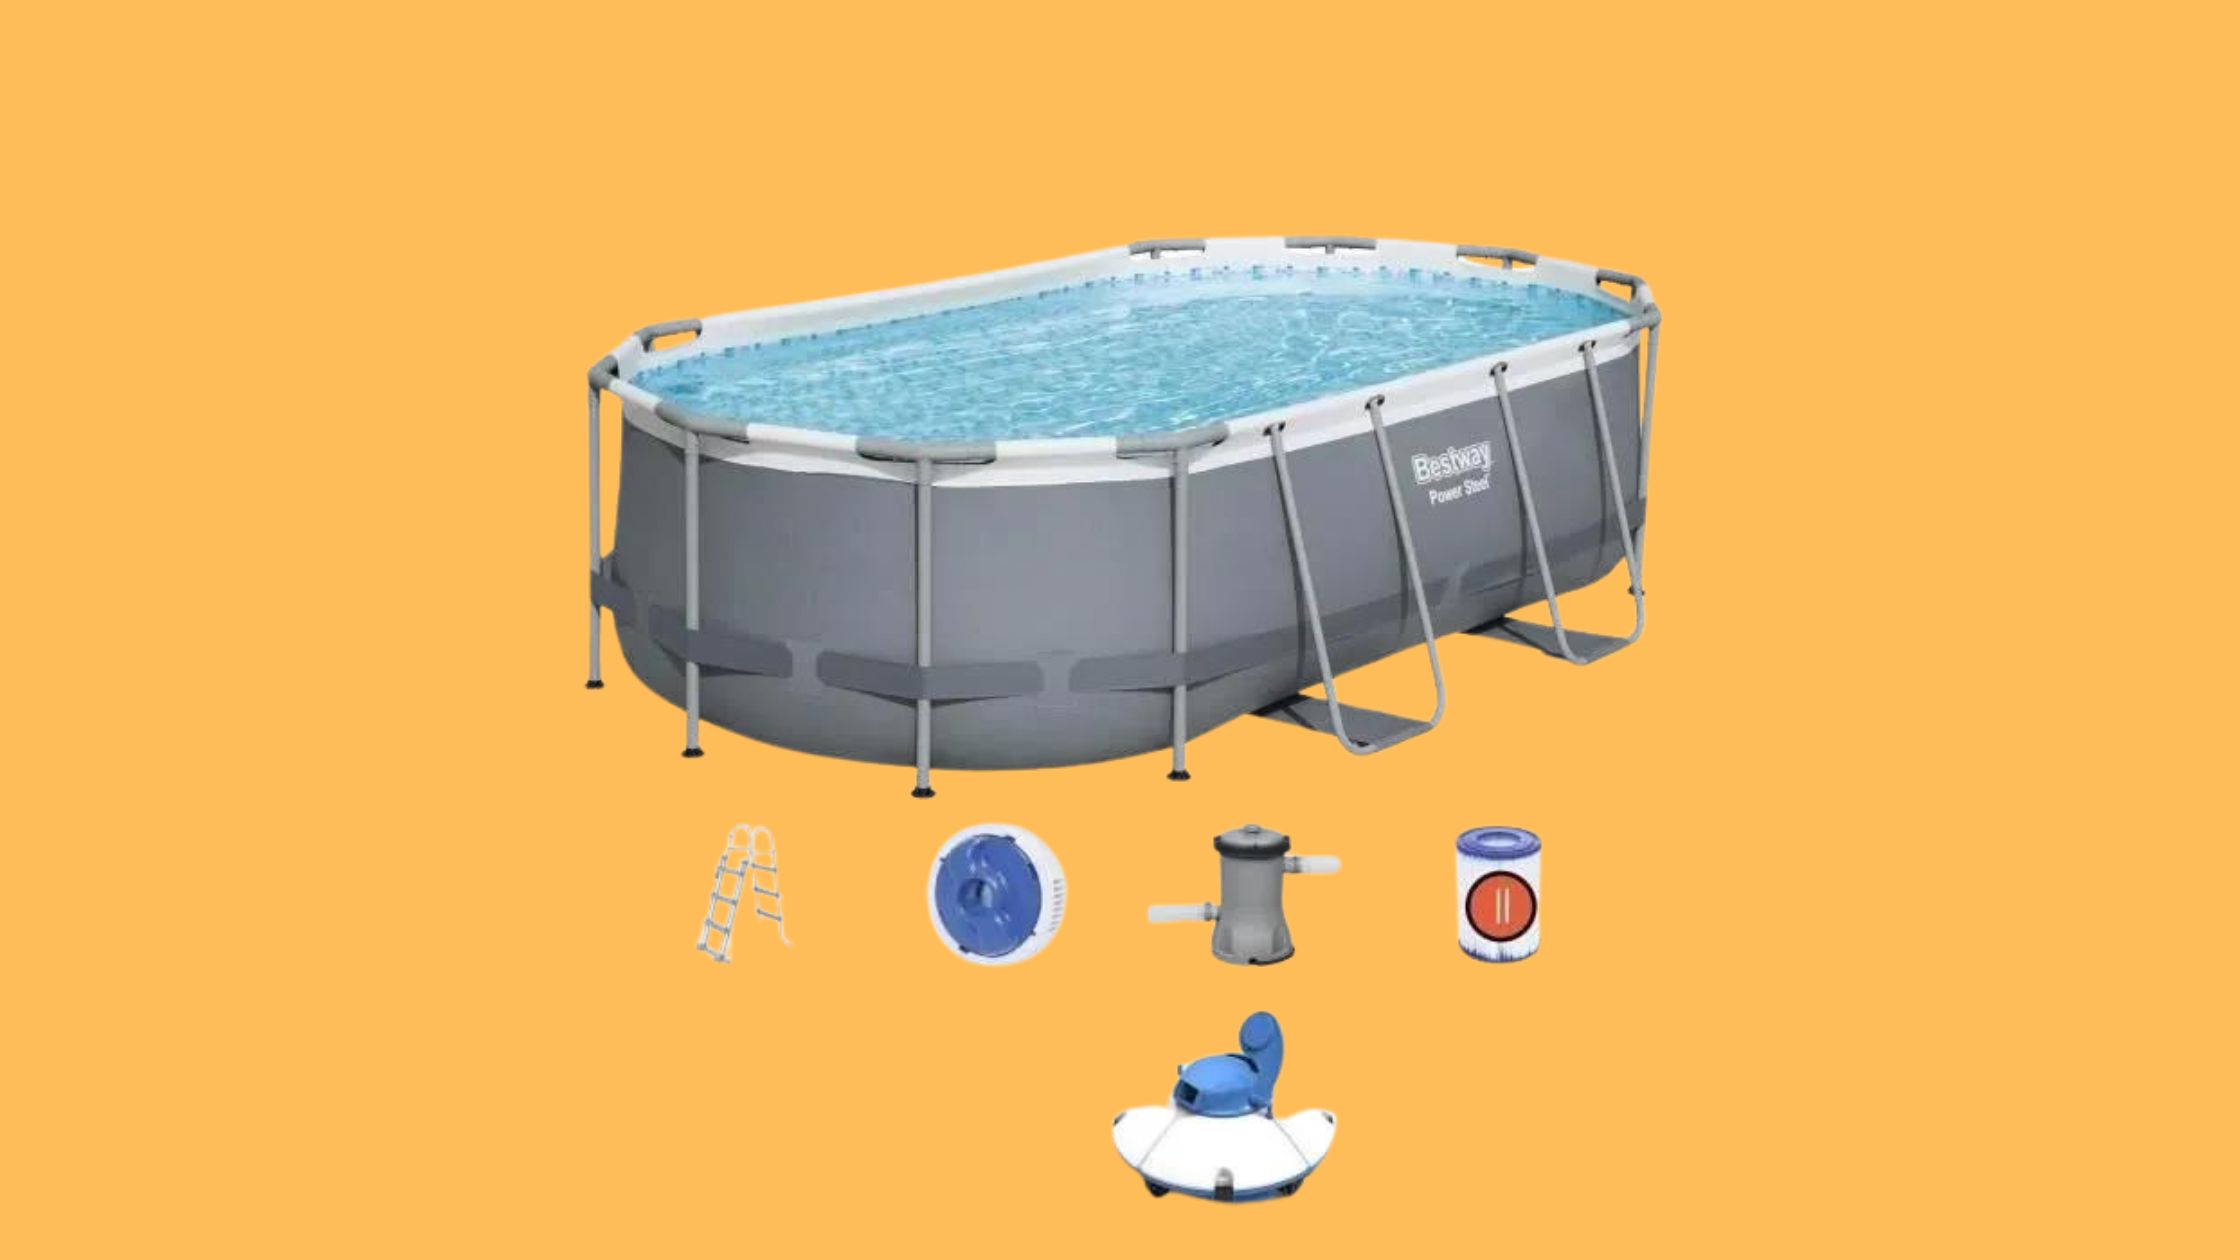 La piscine hors sol tubulaire BESTWAY Power Steel est à moins de 400 € sur ce site de ventes en ligne © Cdiscount